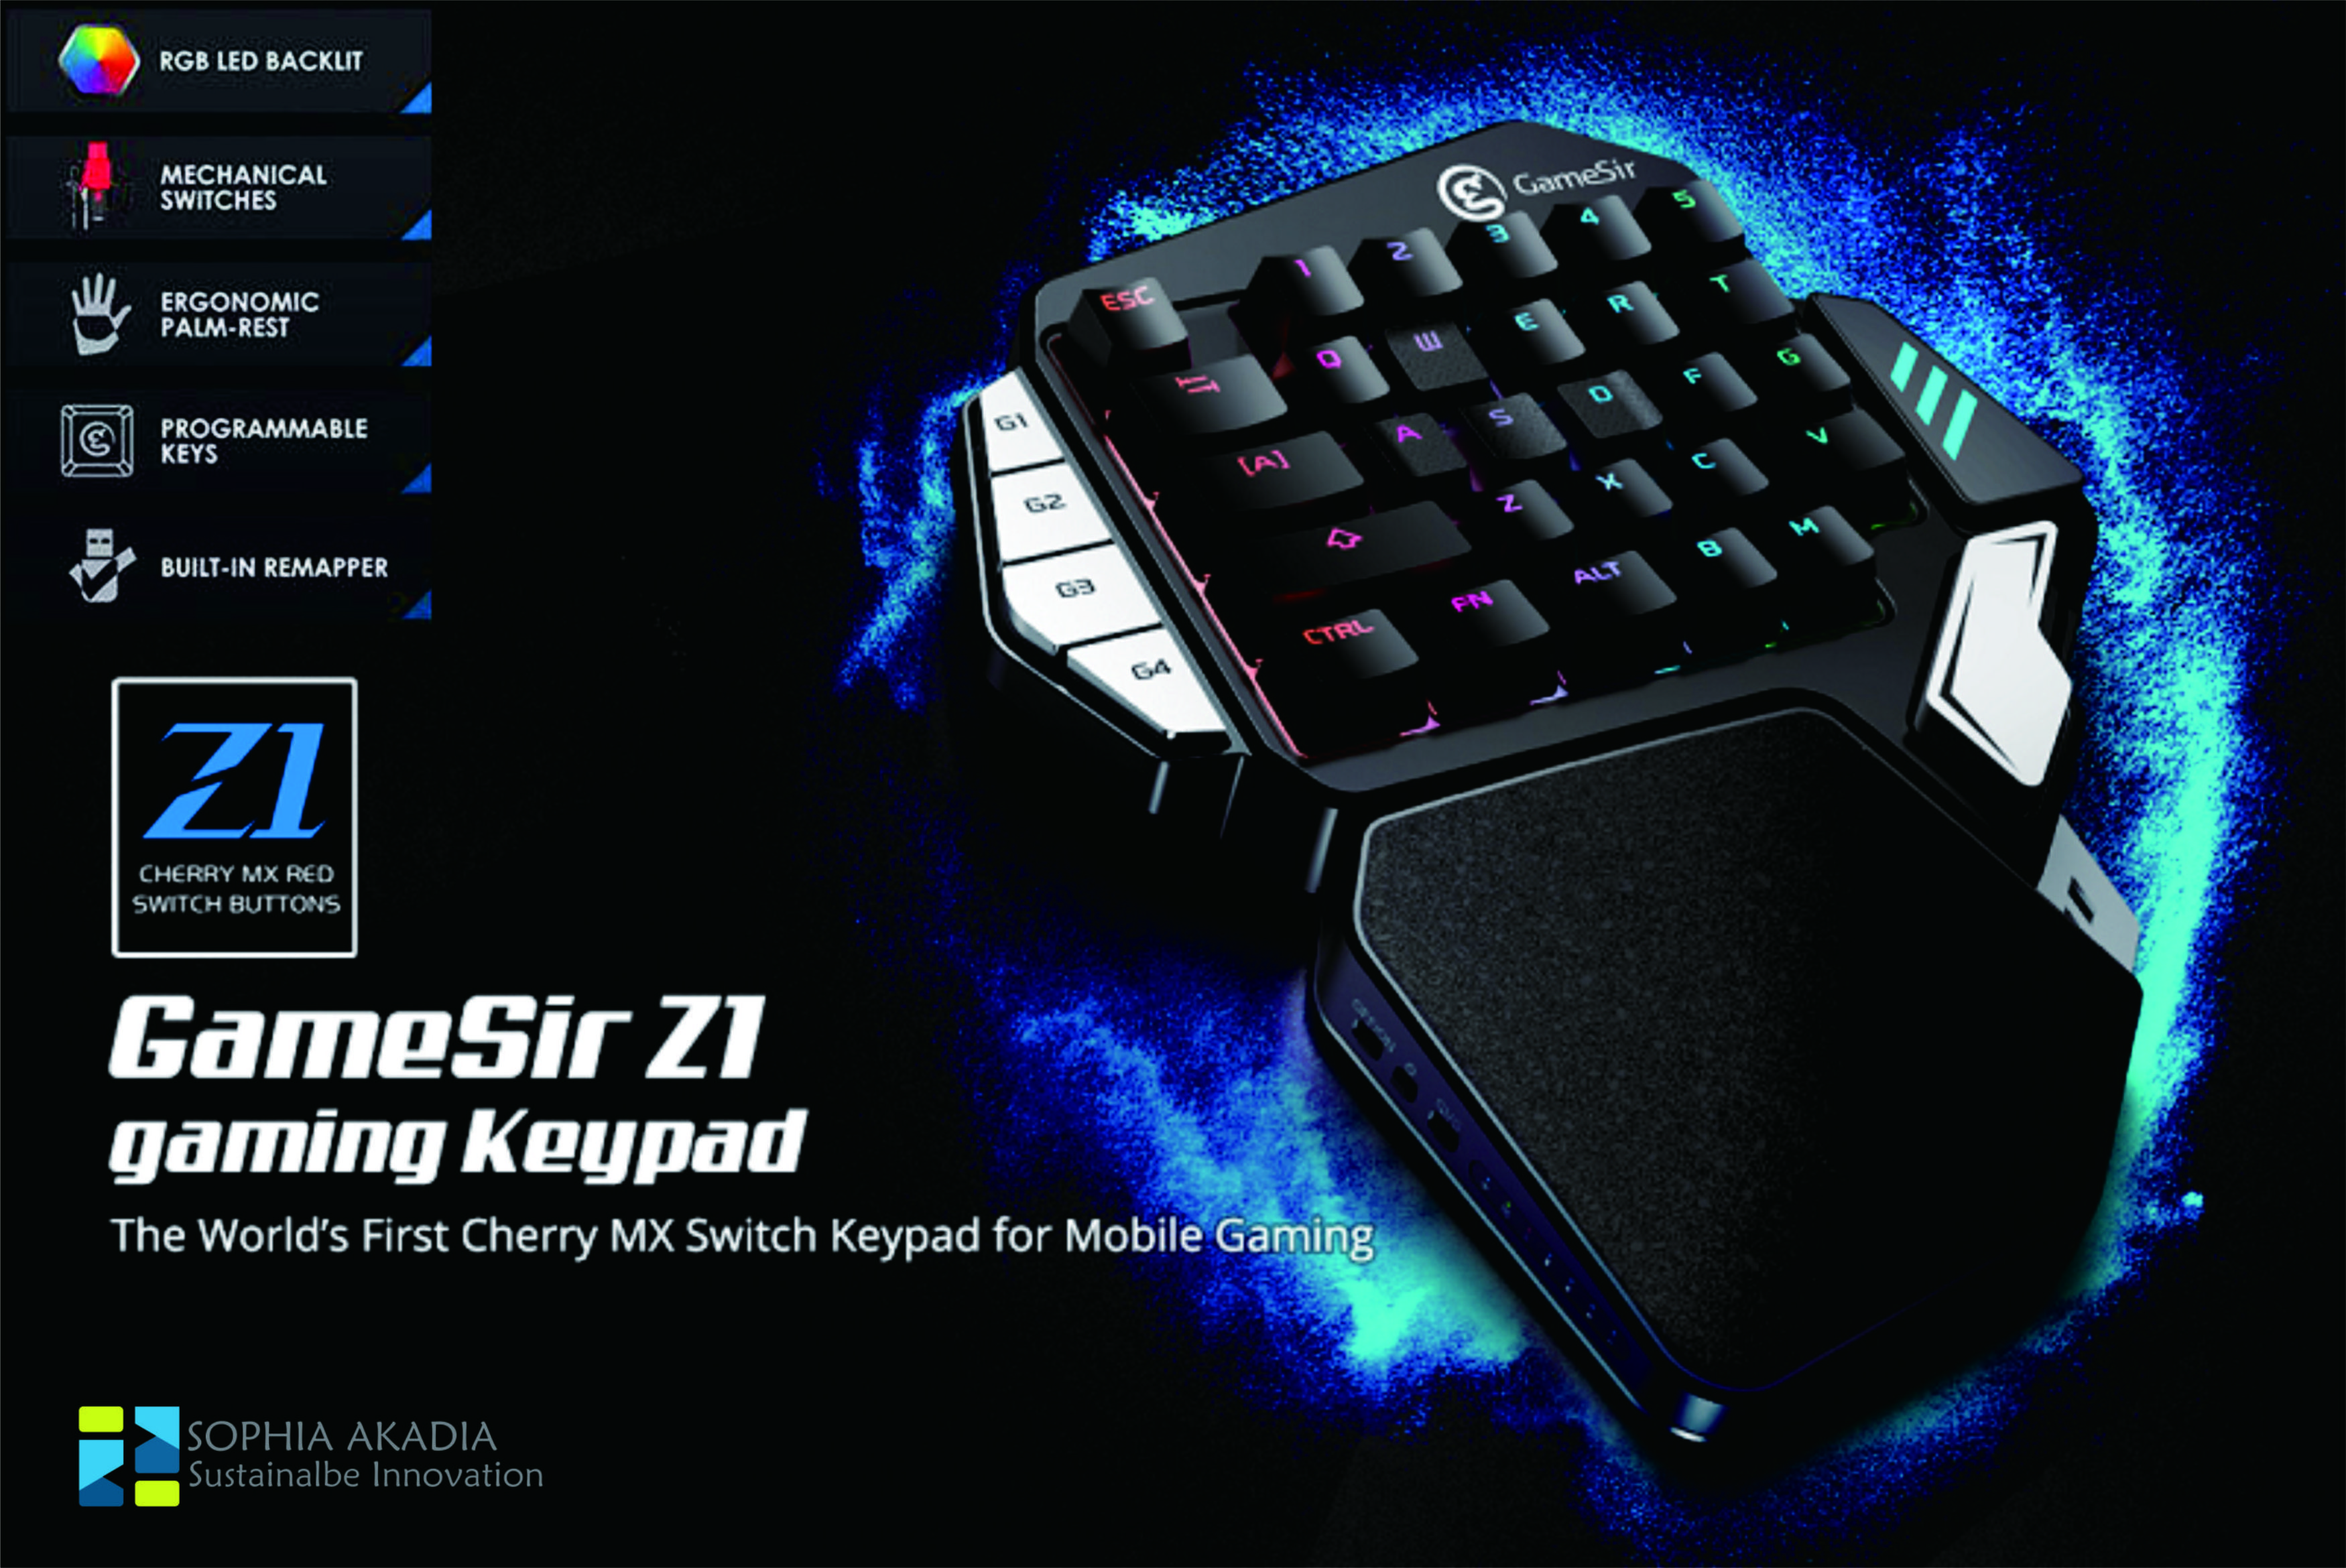 GameSir Z1 Gaming Keypad